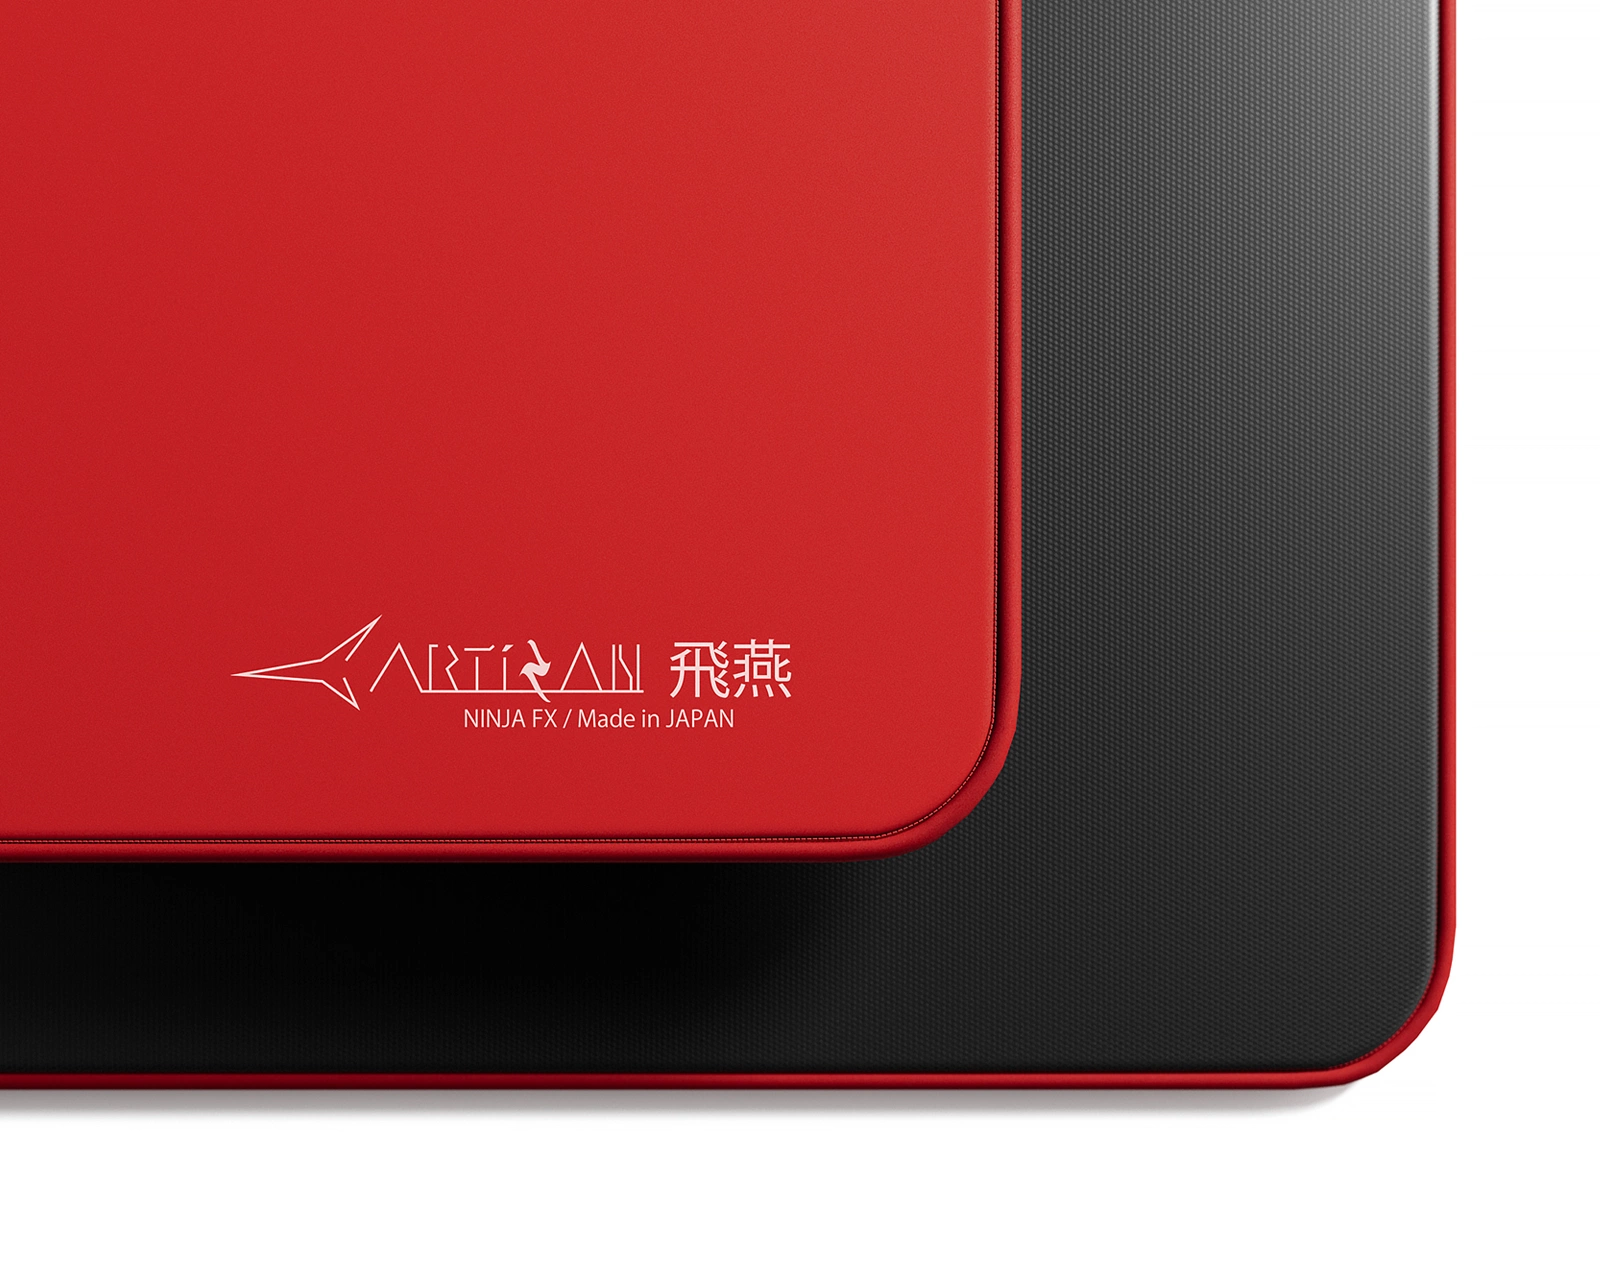 「VCT 2023 Masters Tokyo」出場選手のデバイス統計が公開。最も使われたマウスパッドは日本ブランド「Artisan」製品